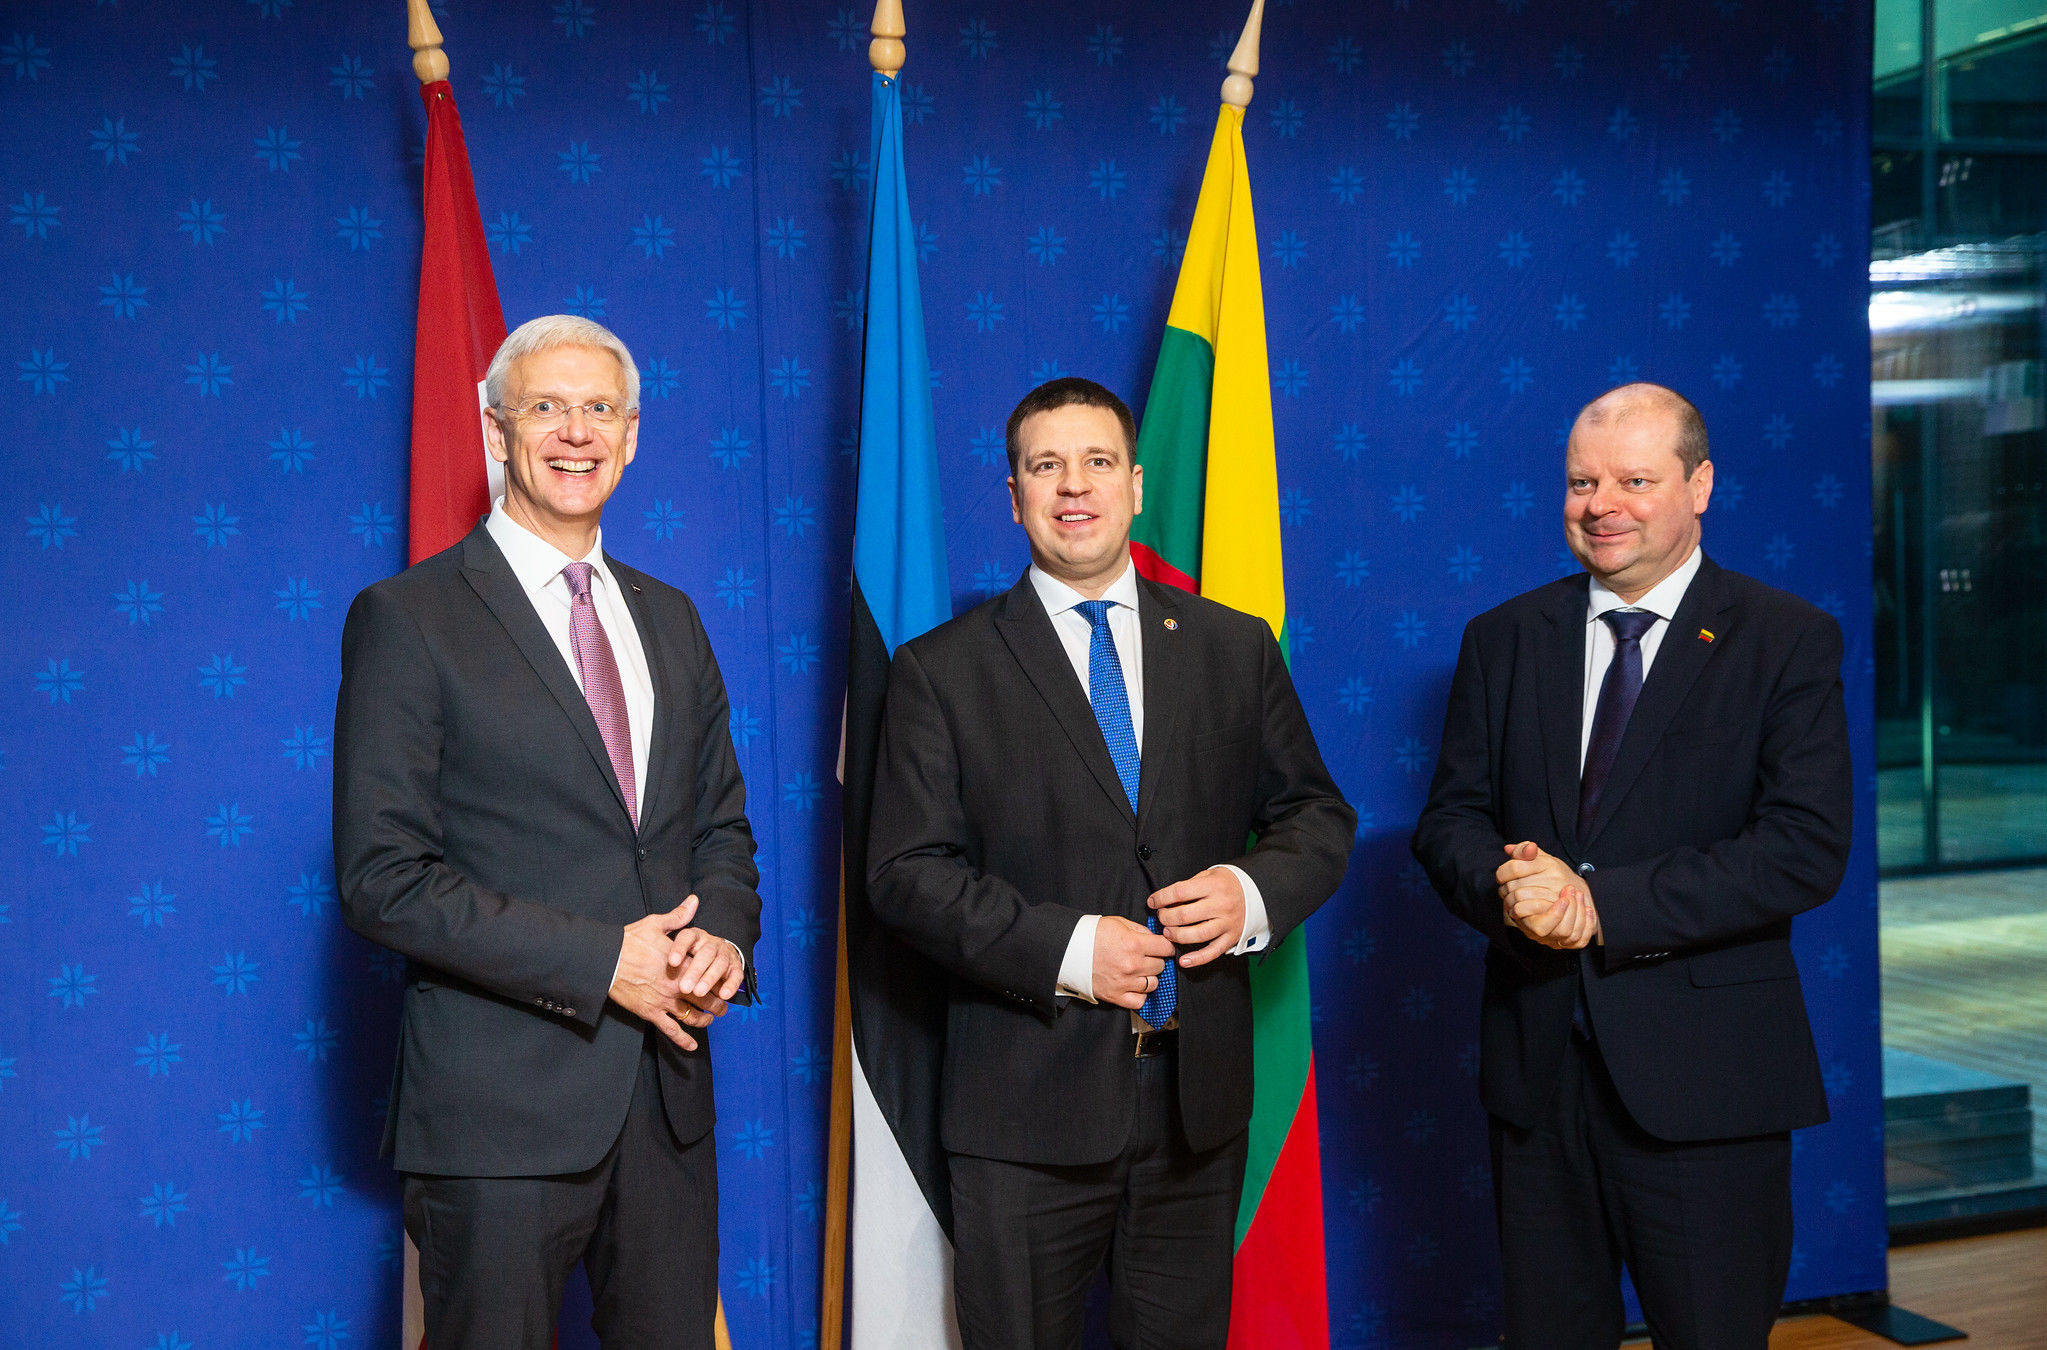 Премьеры-министры прибалтийских стран Юри Ратас, Кришьянис Кариньш и Саулюс Сквернялис на встрече, 7 февраля 2020 года